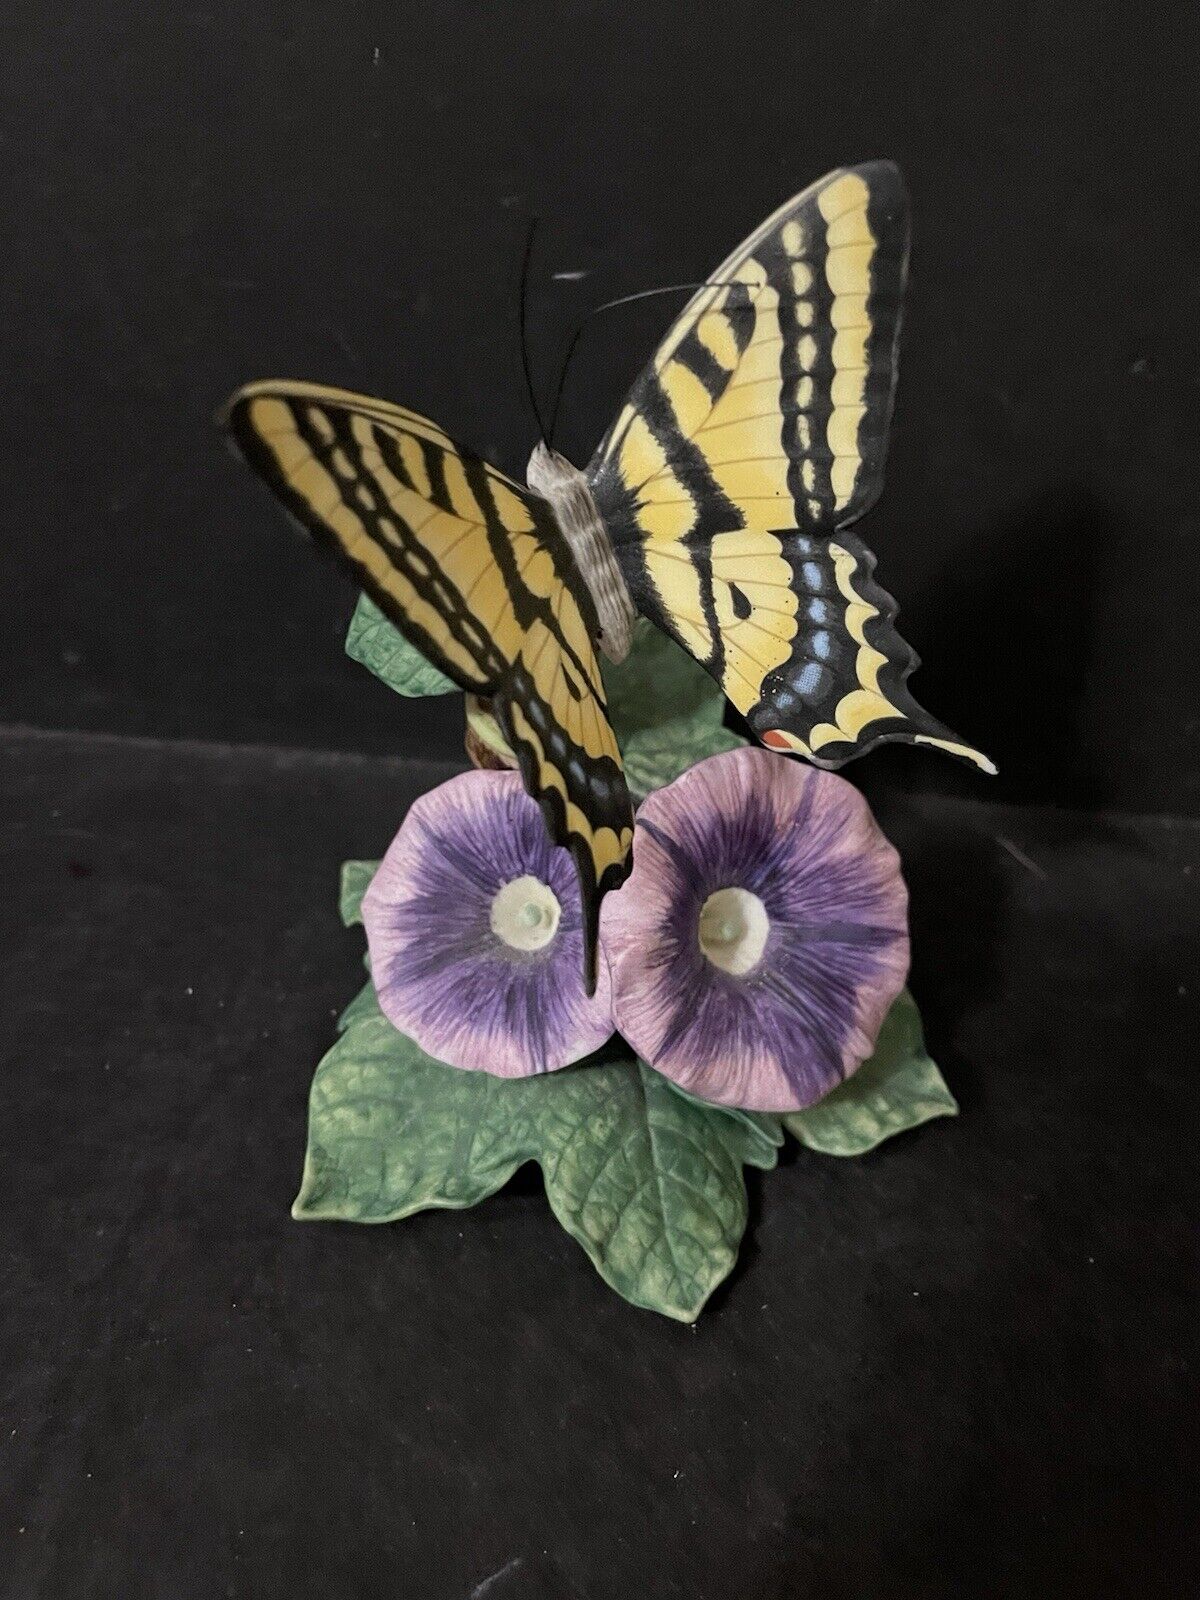 VTG Lenox Fine Porcelain Figurine Swallowtail Butterfly on Flower 1989